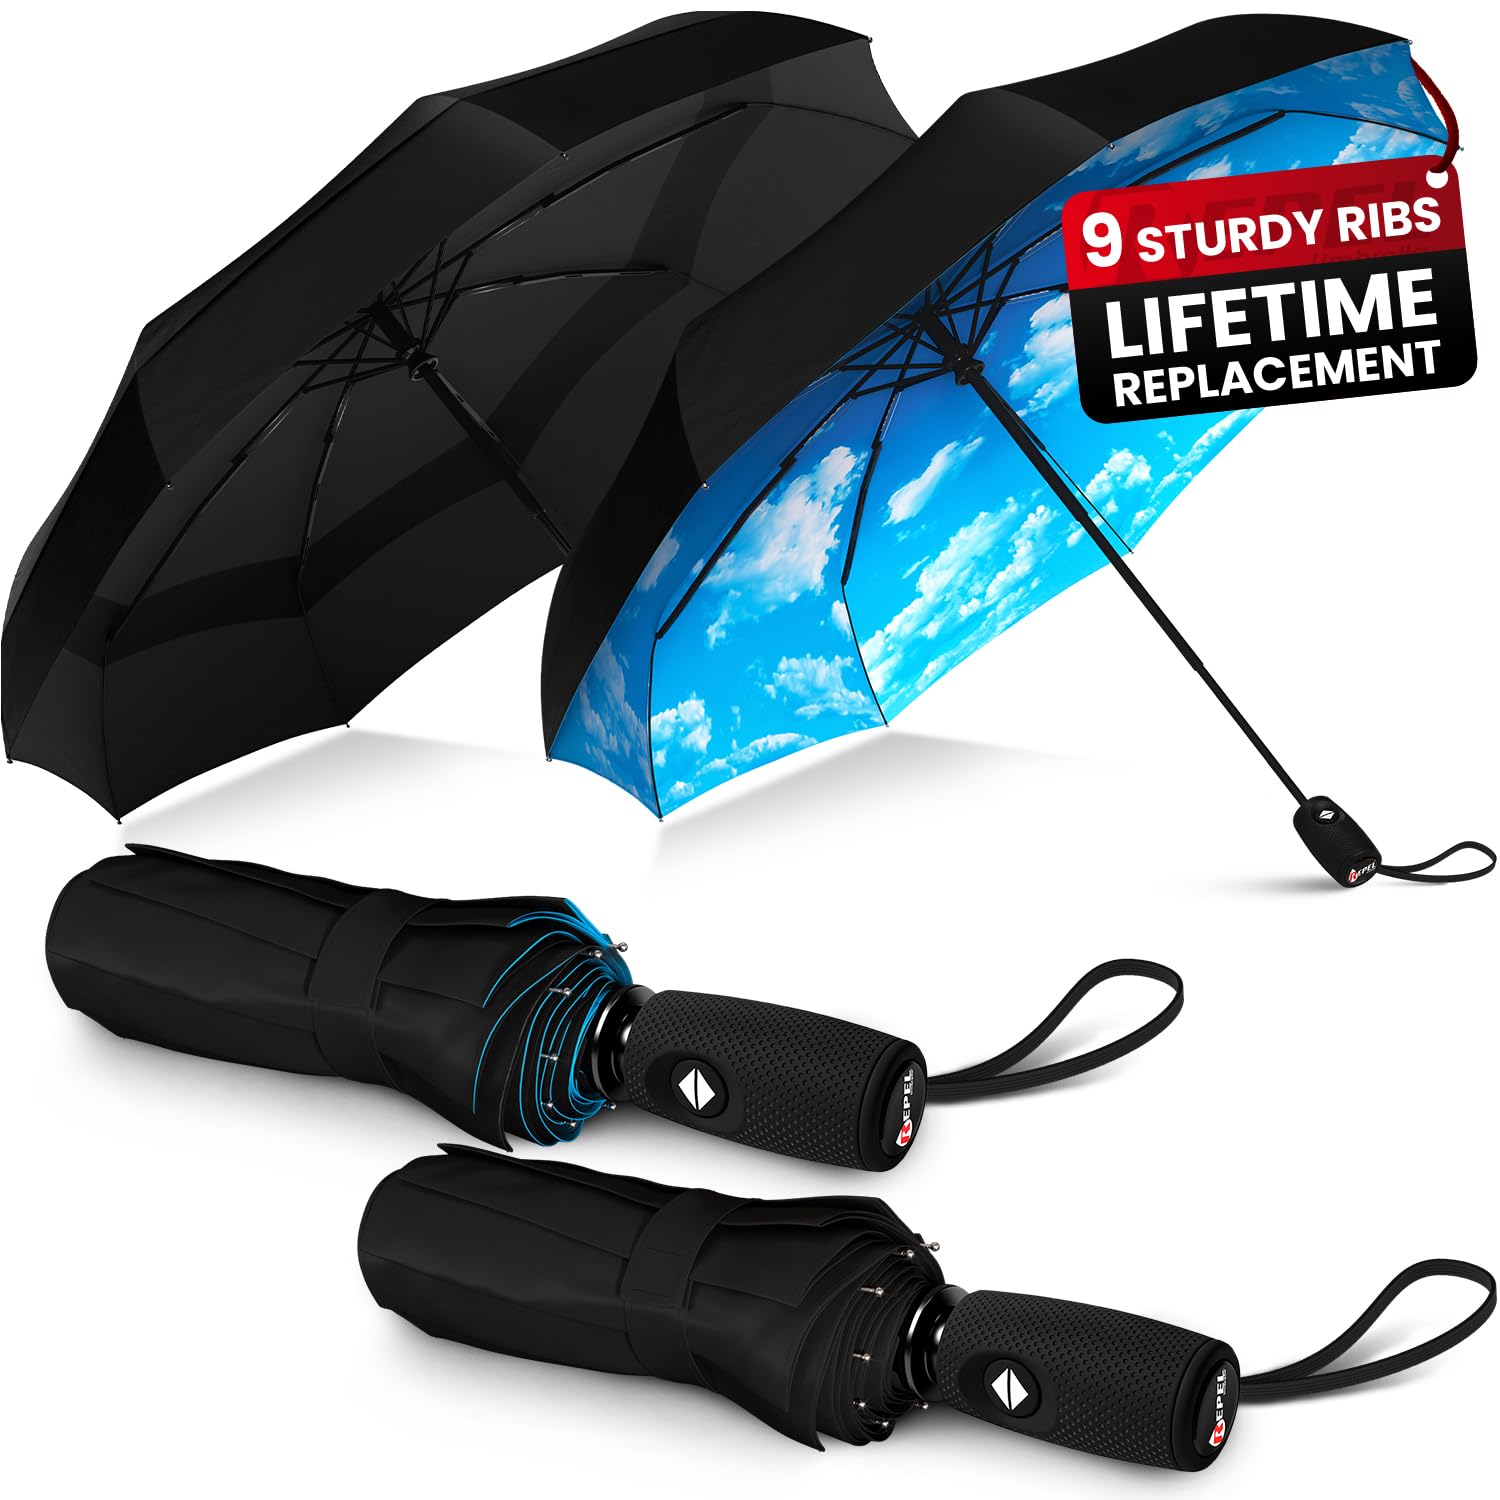 Repel Umbrella The Original Portable Travel Umbrella - Umbrellas for Rain Windproof, Strong Compact Umbrella for Wind and Rain - Perfect For On-the-Go, Car Umbrella, Backpack Umbrella